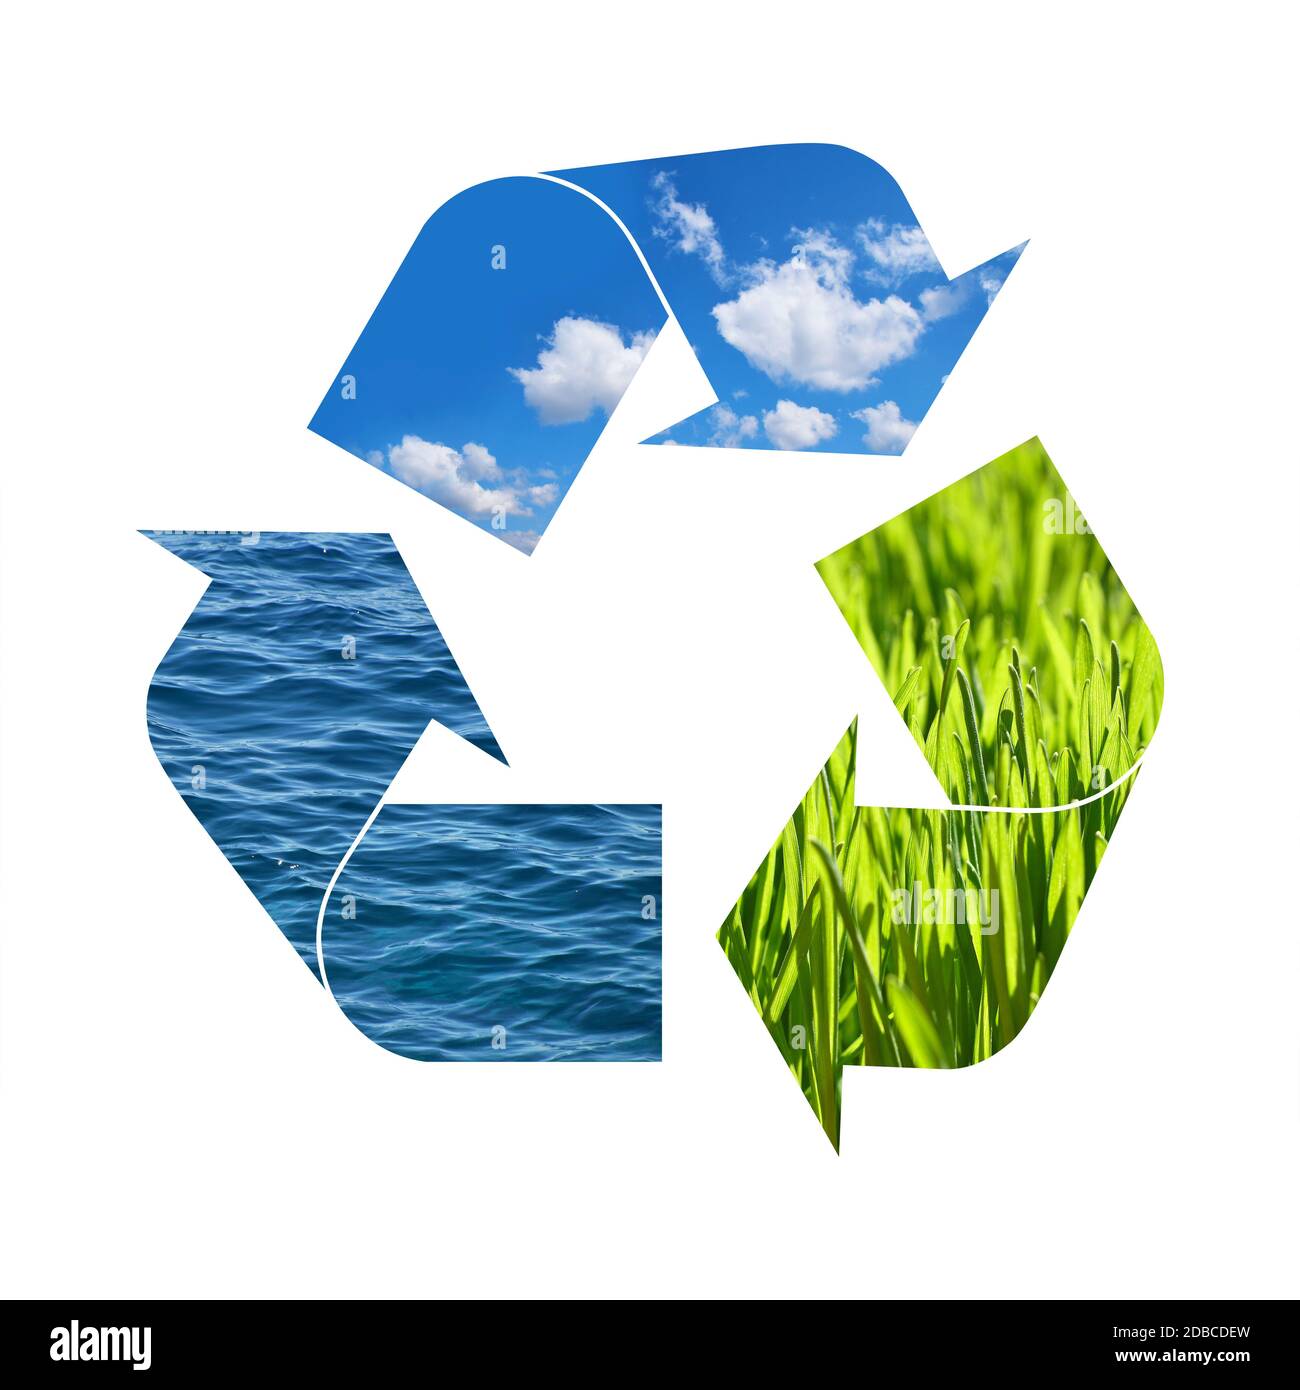 Illustrazione riciclaggio simbolo di elementi della natura, erba verde, cielo blu e acqua di mare isolato su sfondo bianco Foto Stock